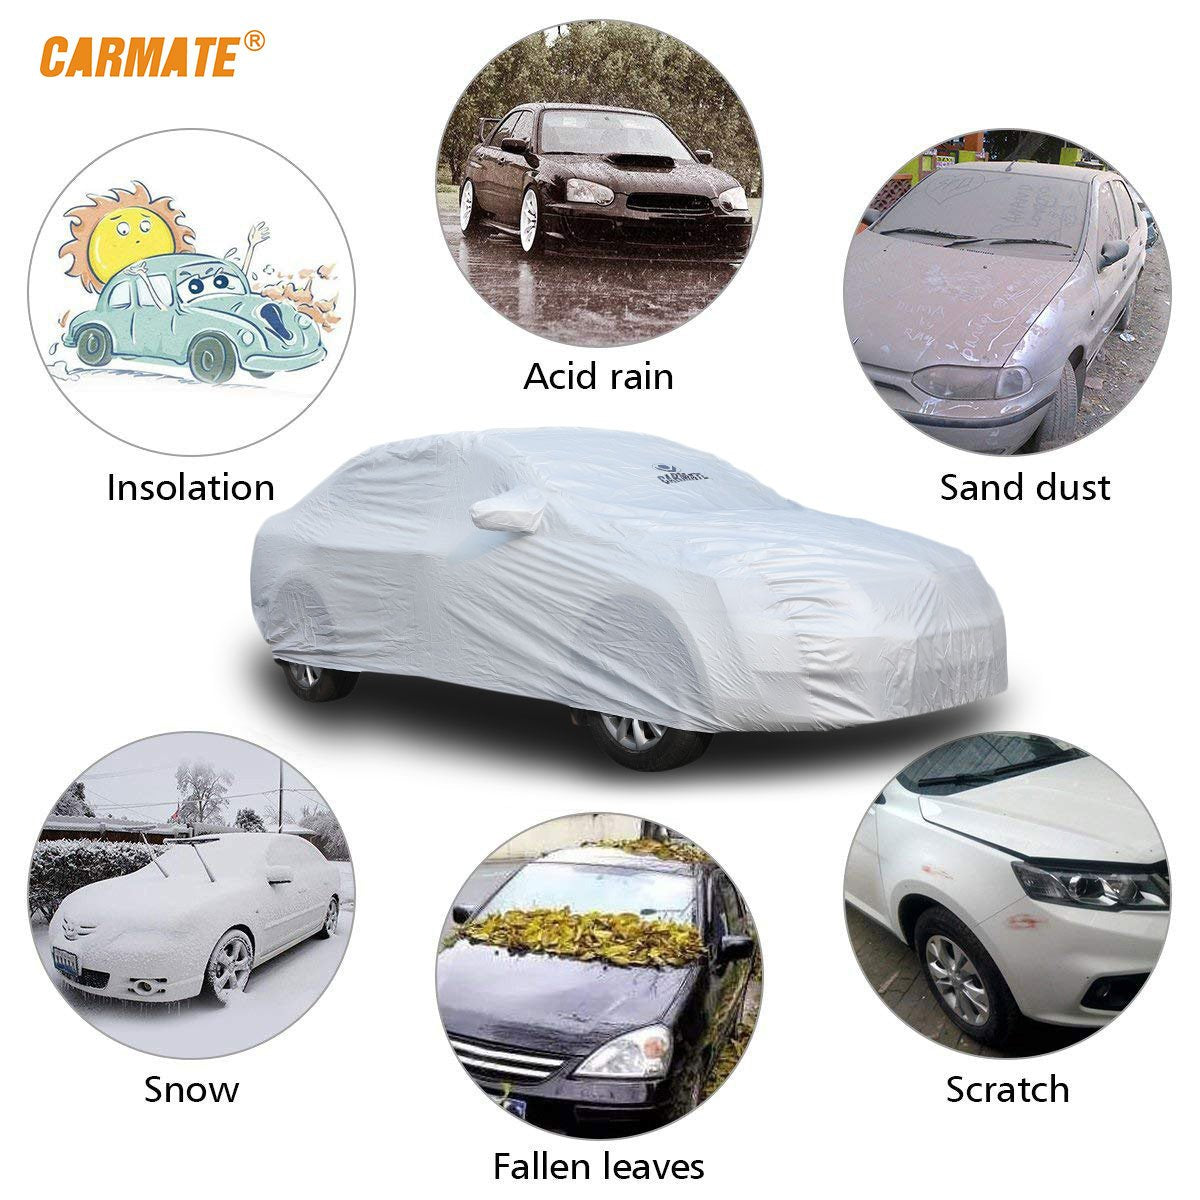 Carmate Premium Car Body Cover Silver Matty (Silver) for Hyundai - Creta 2020 - CARMATE®